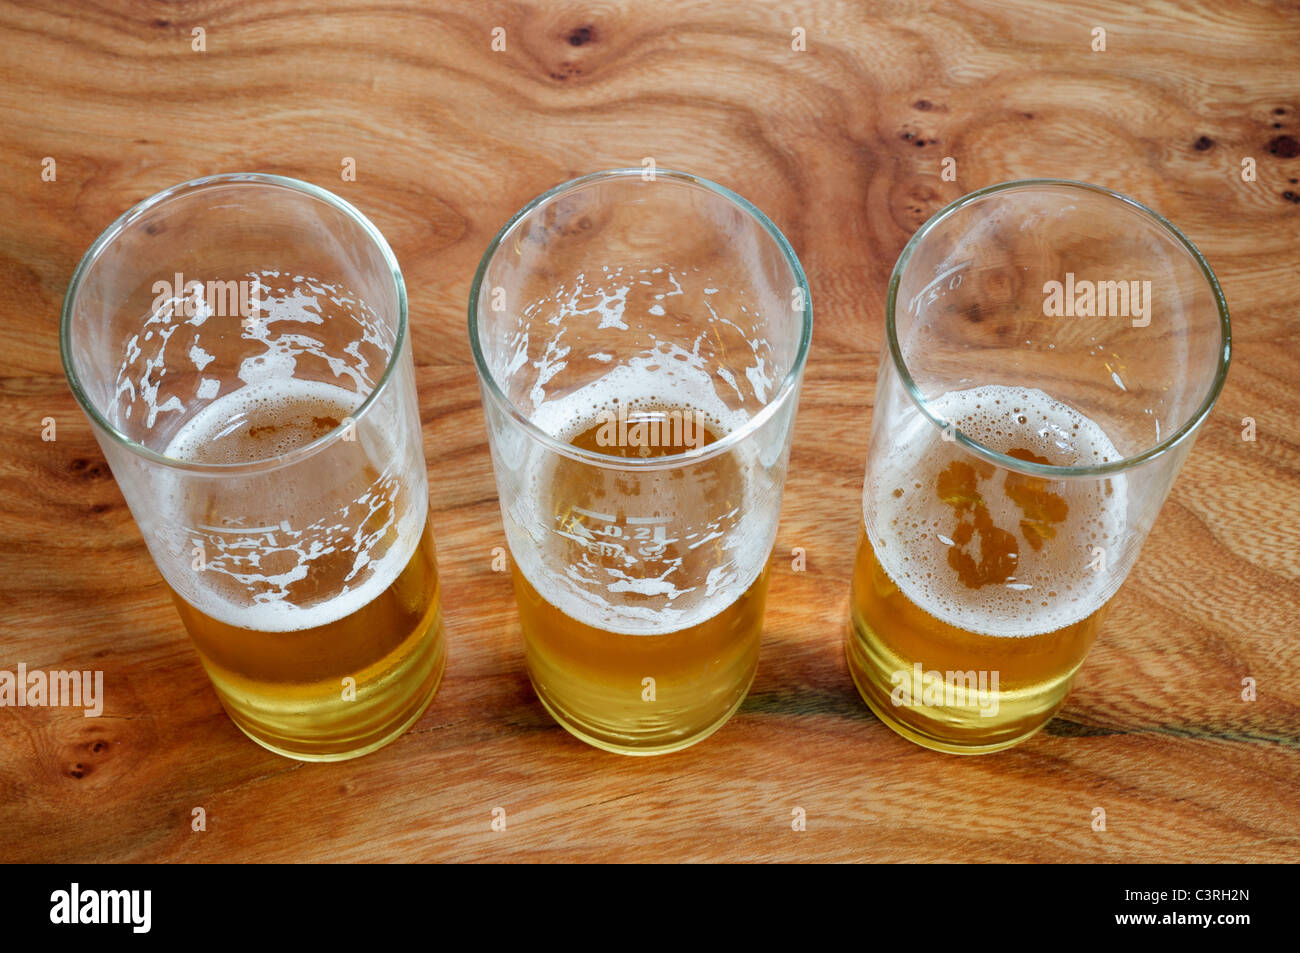 Half-empty beer glasses Stock Photo